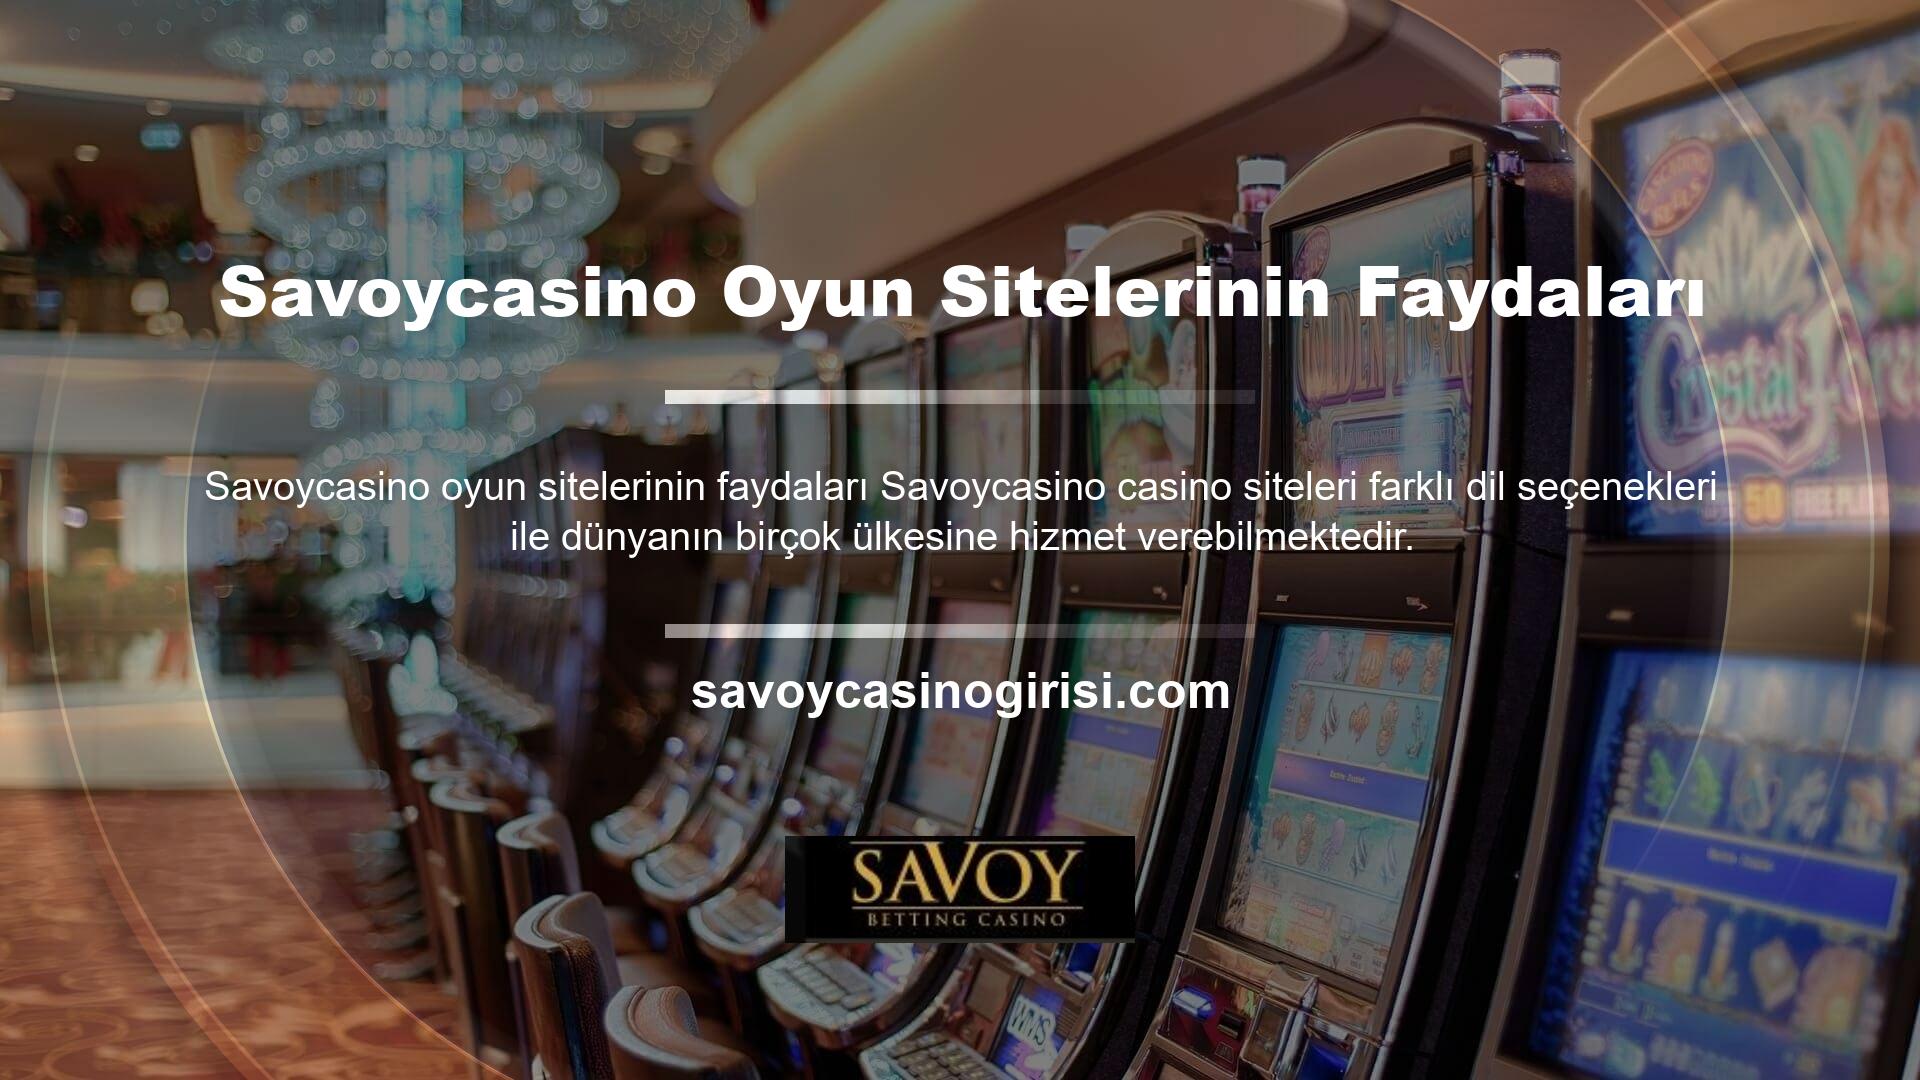 Savoycasino slot makinesi web sitesinden lisanslı oyunlar oynamak isteyen herkes online olarak kayıt olabilir